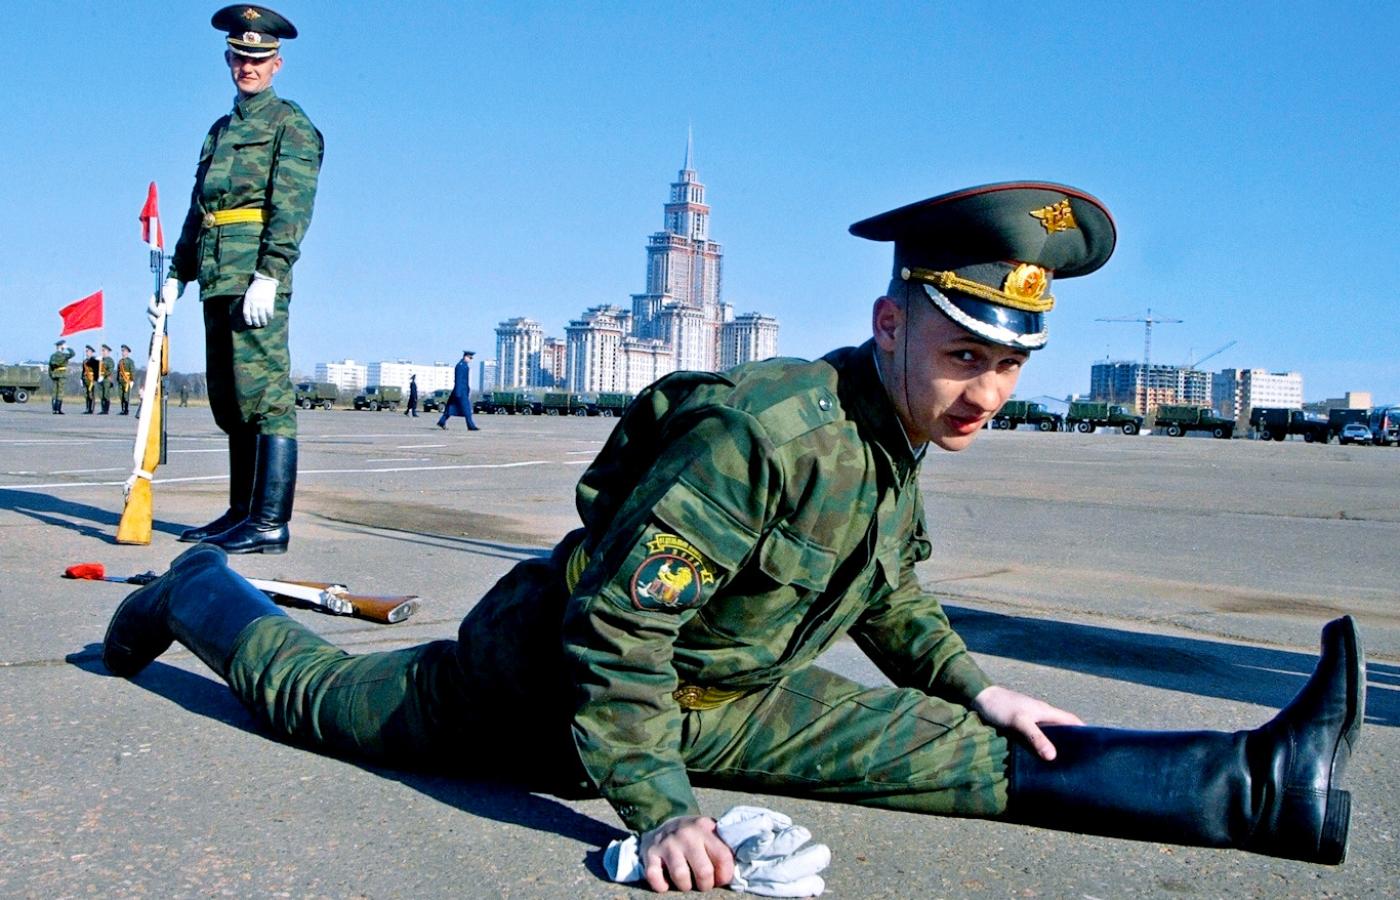 Ćwiczenia przed wielką paradą wojskową z okazji rocznicy zakończenia II wojny światowej. Moskwa, 2004 r.